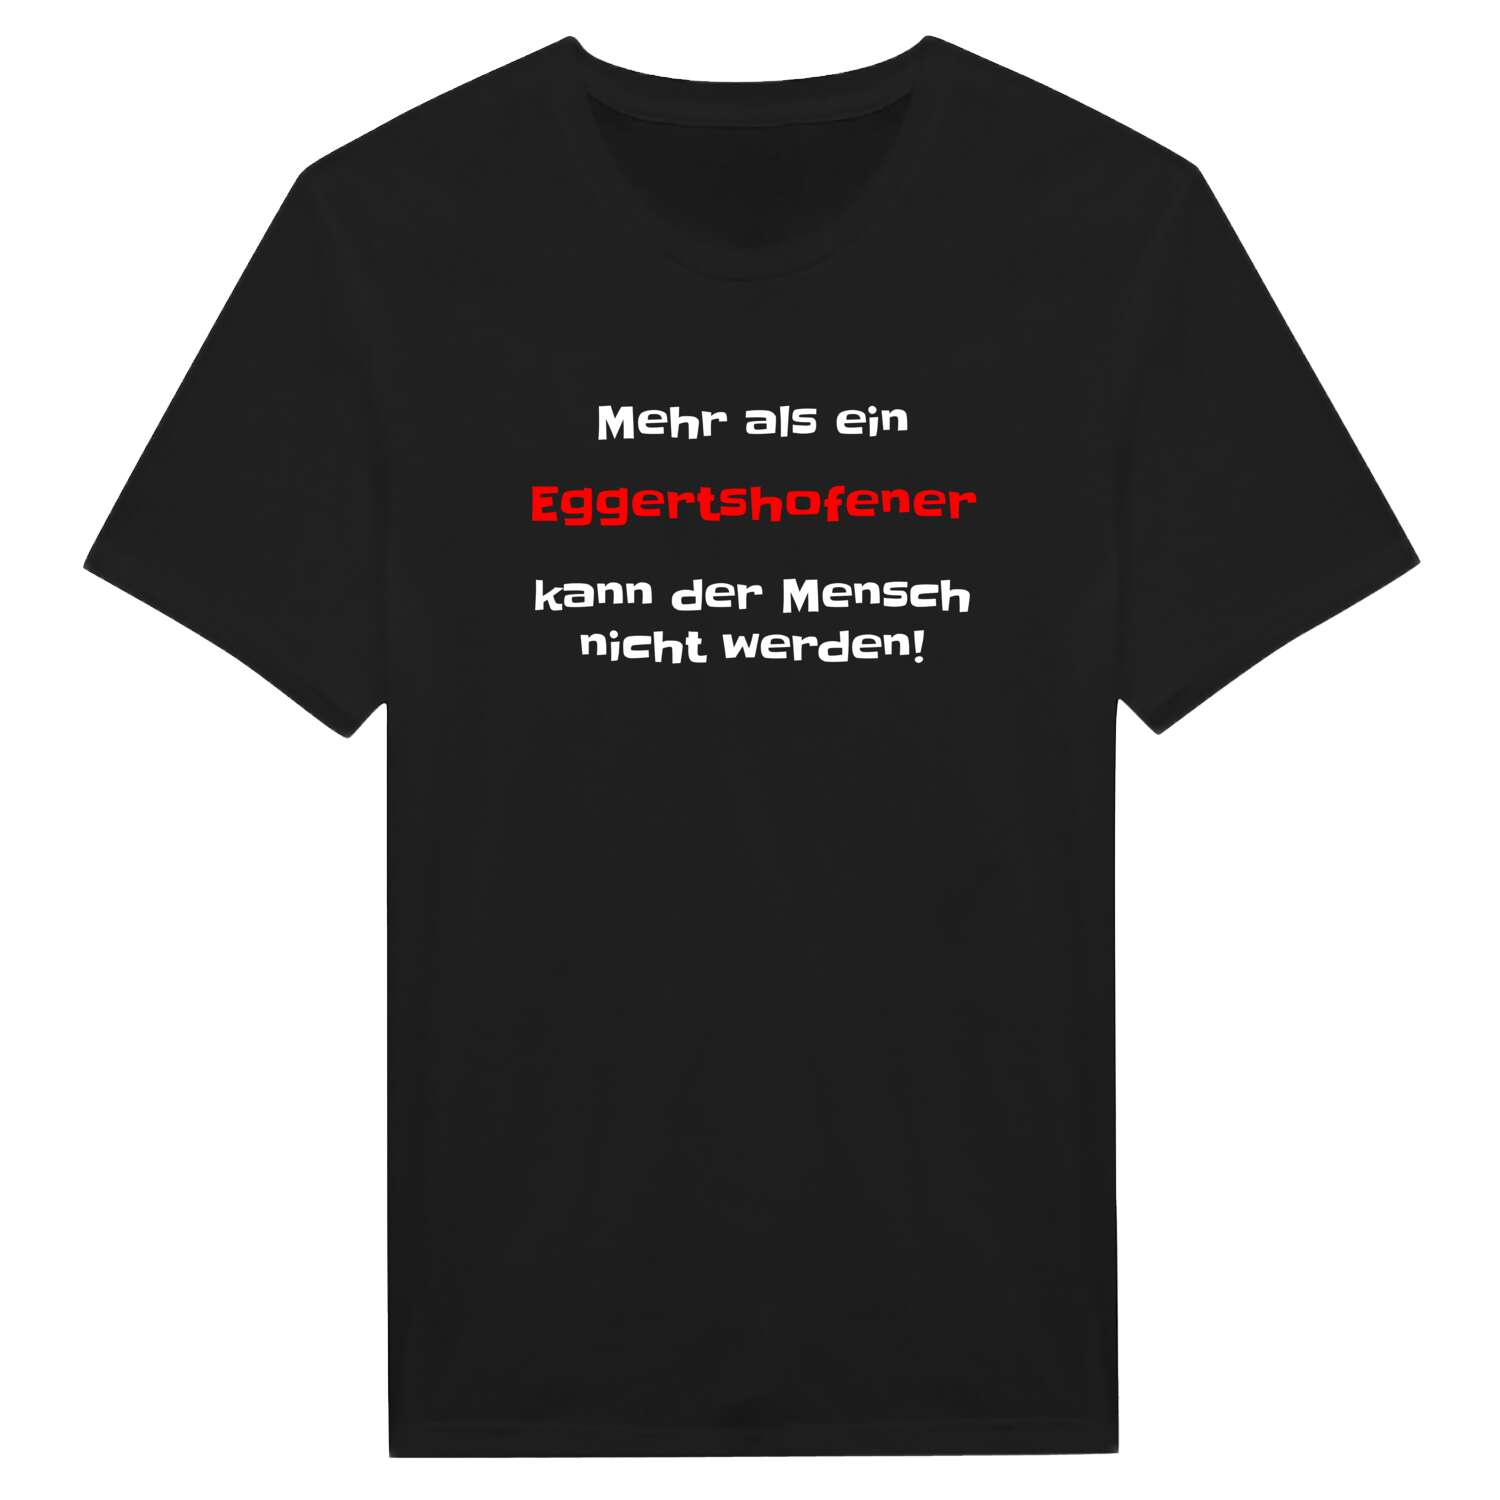 Eggertshofen T-Shirt »Mehr als ein«